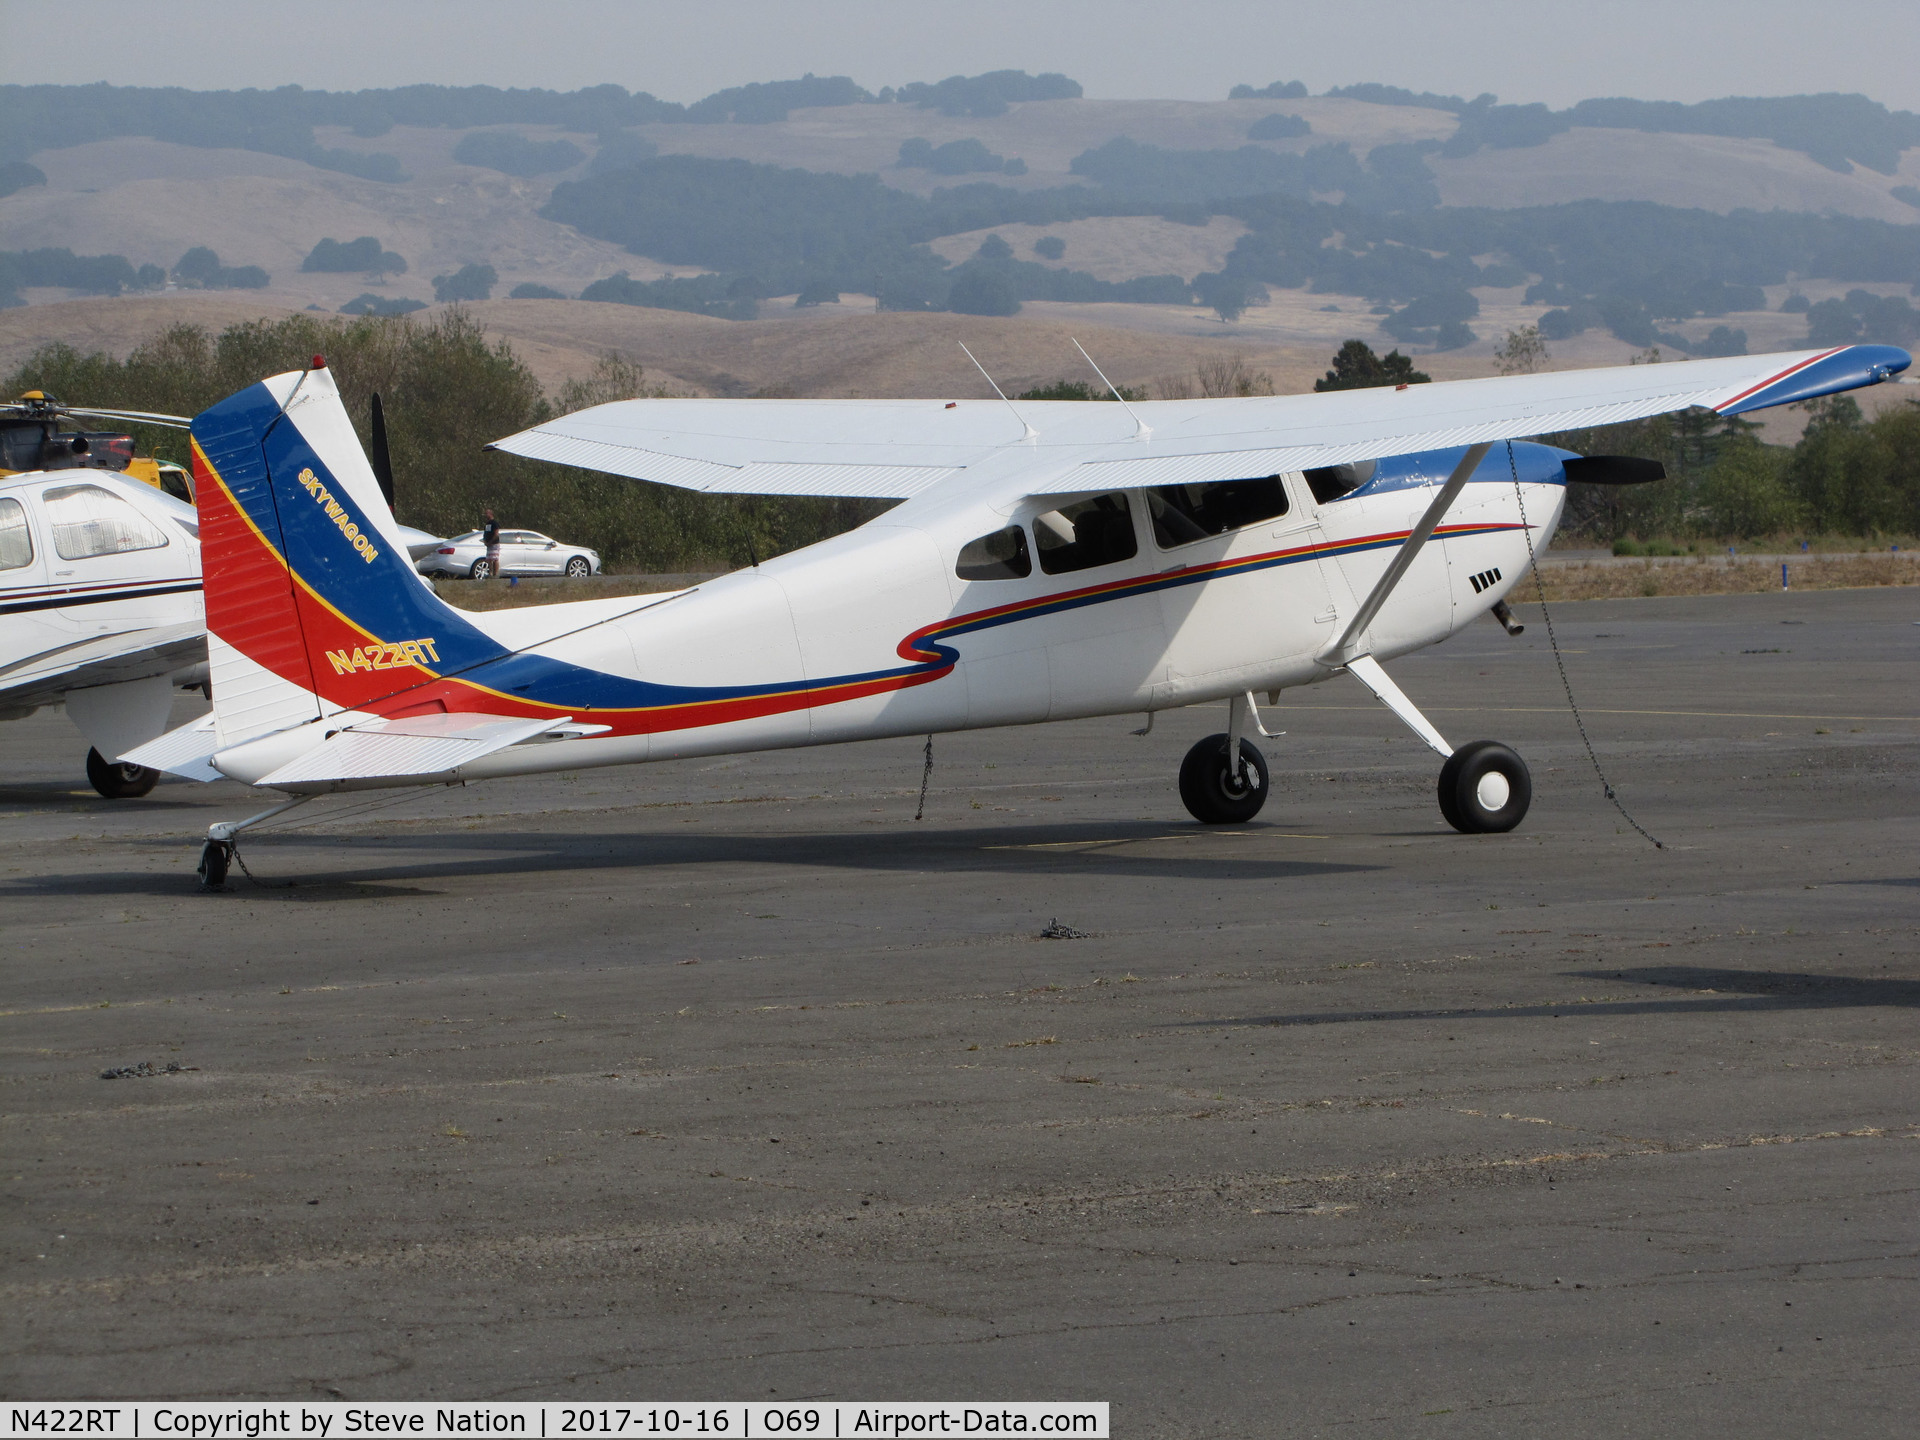 N422RT, Cessna 180 C/N 18052795, Colorful Montana based 1977 Cessna 180K @ Petaluma Municipal Airport, CA